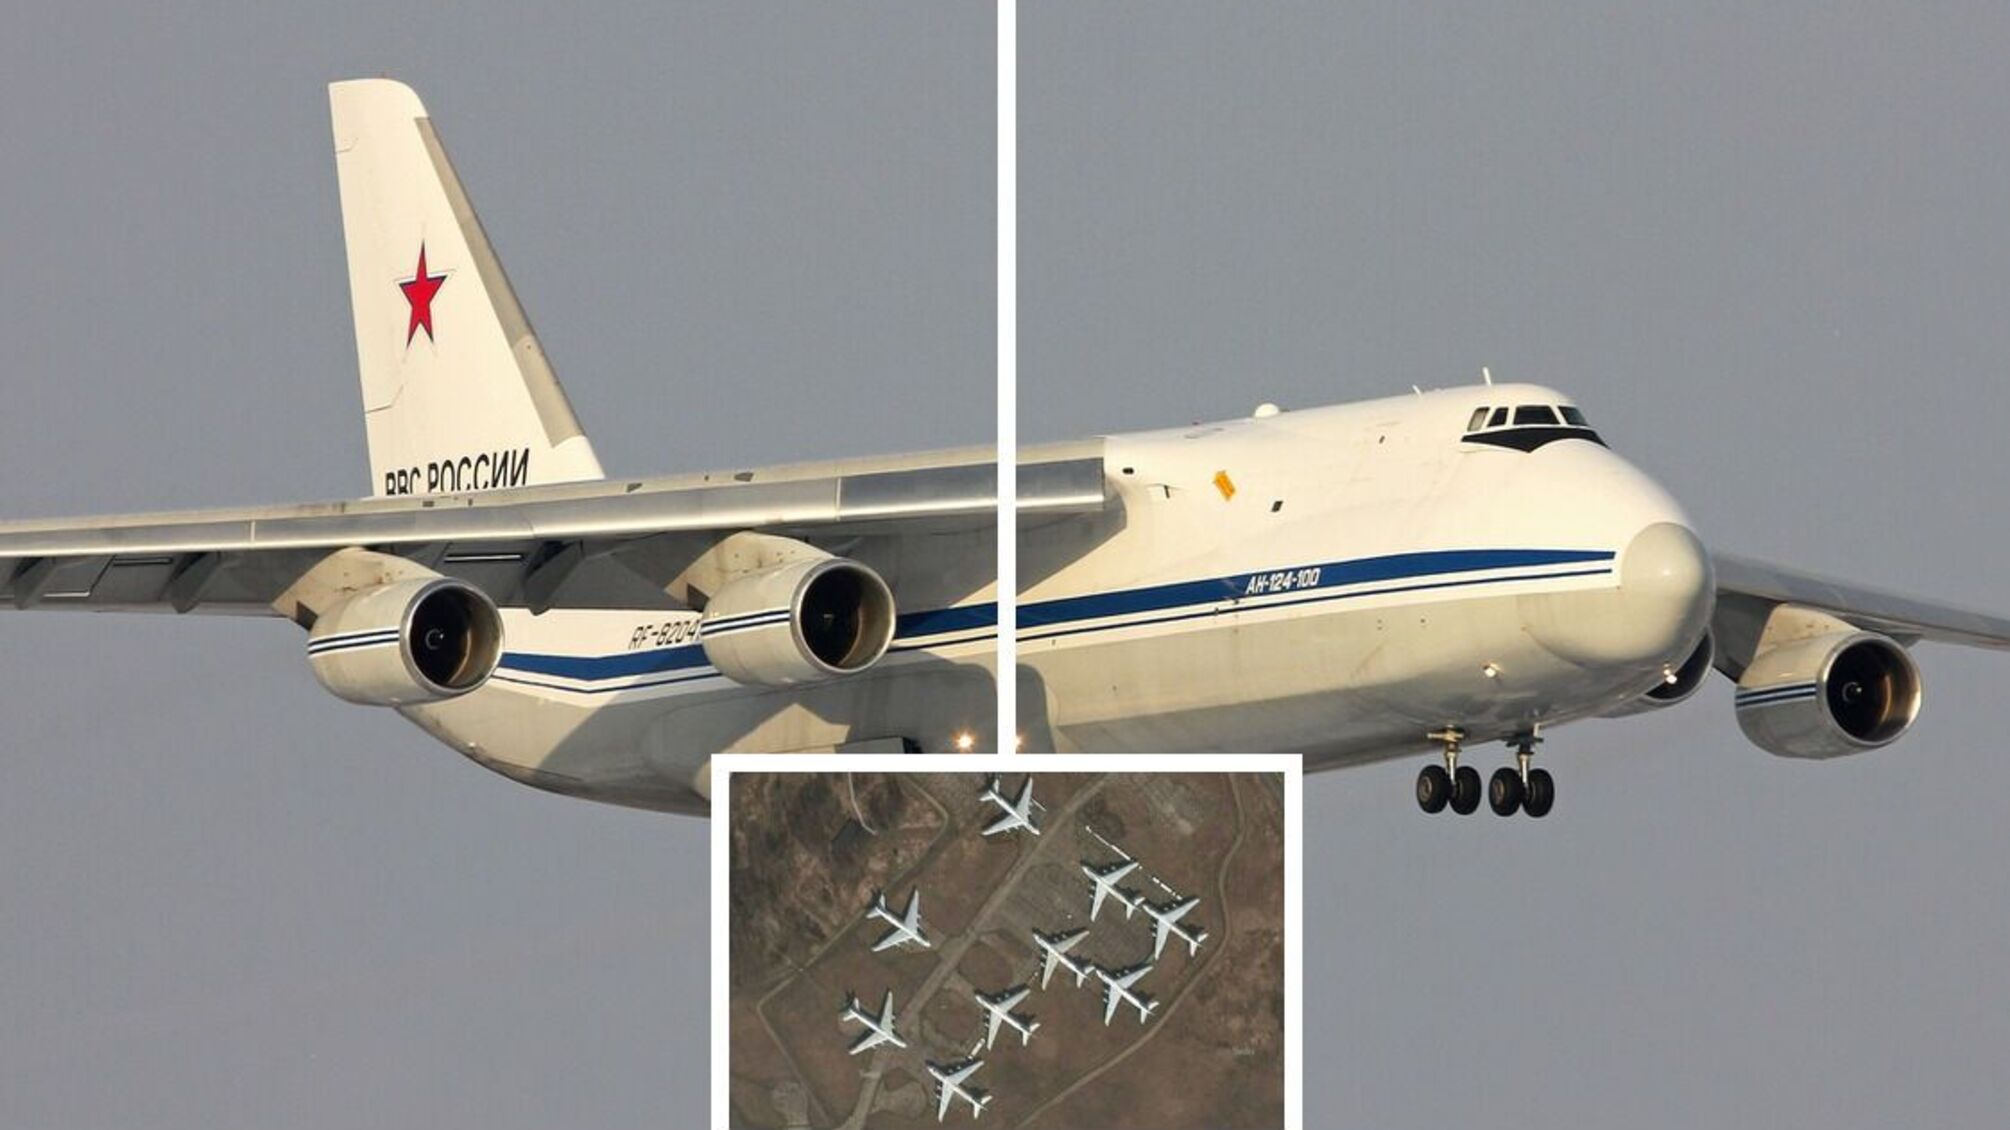 Армия рф потеряла два самолета Ан-124-100 на базе под Брянском - что известно